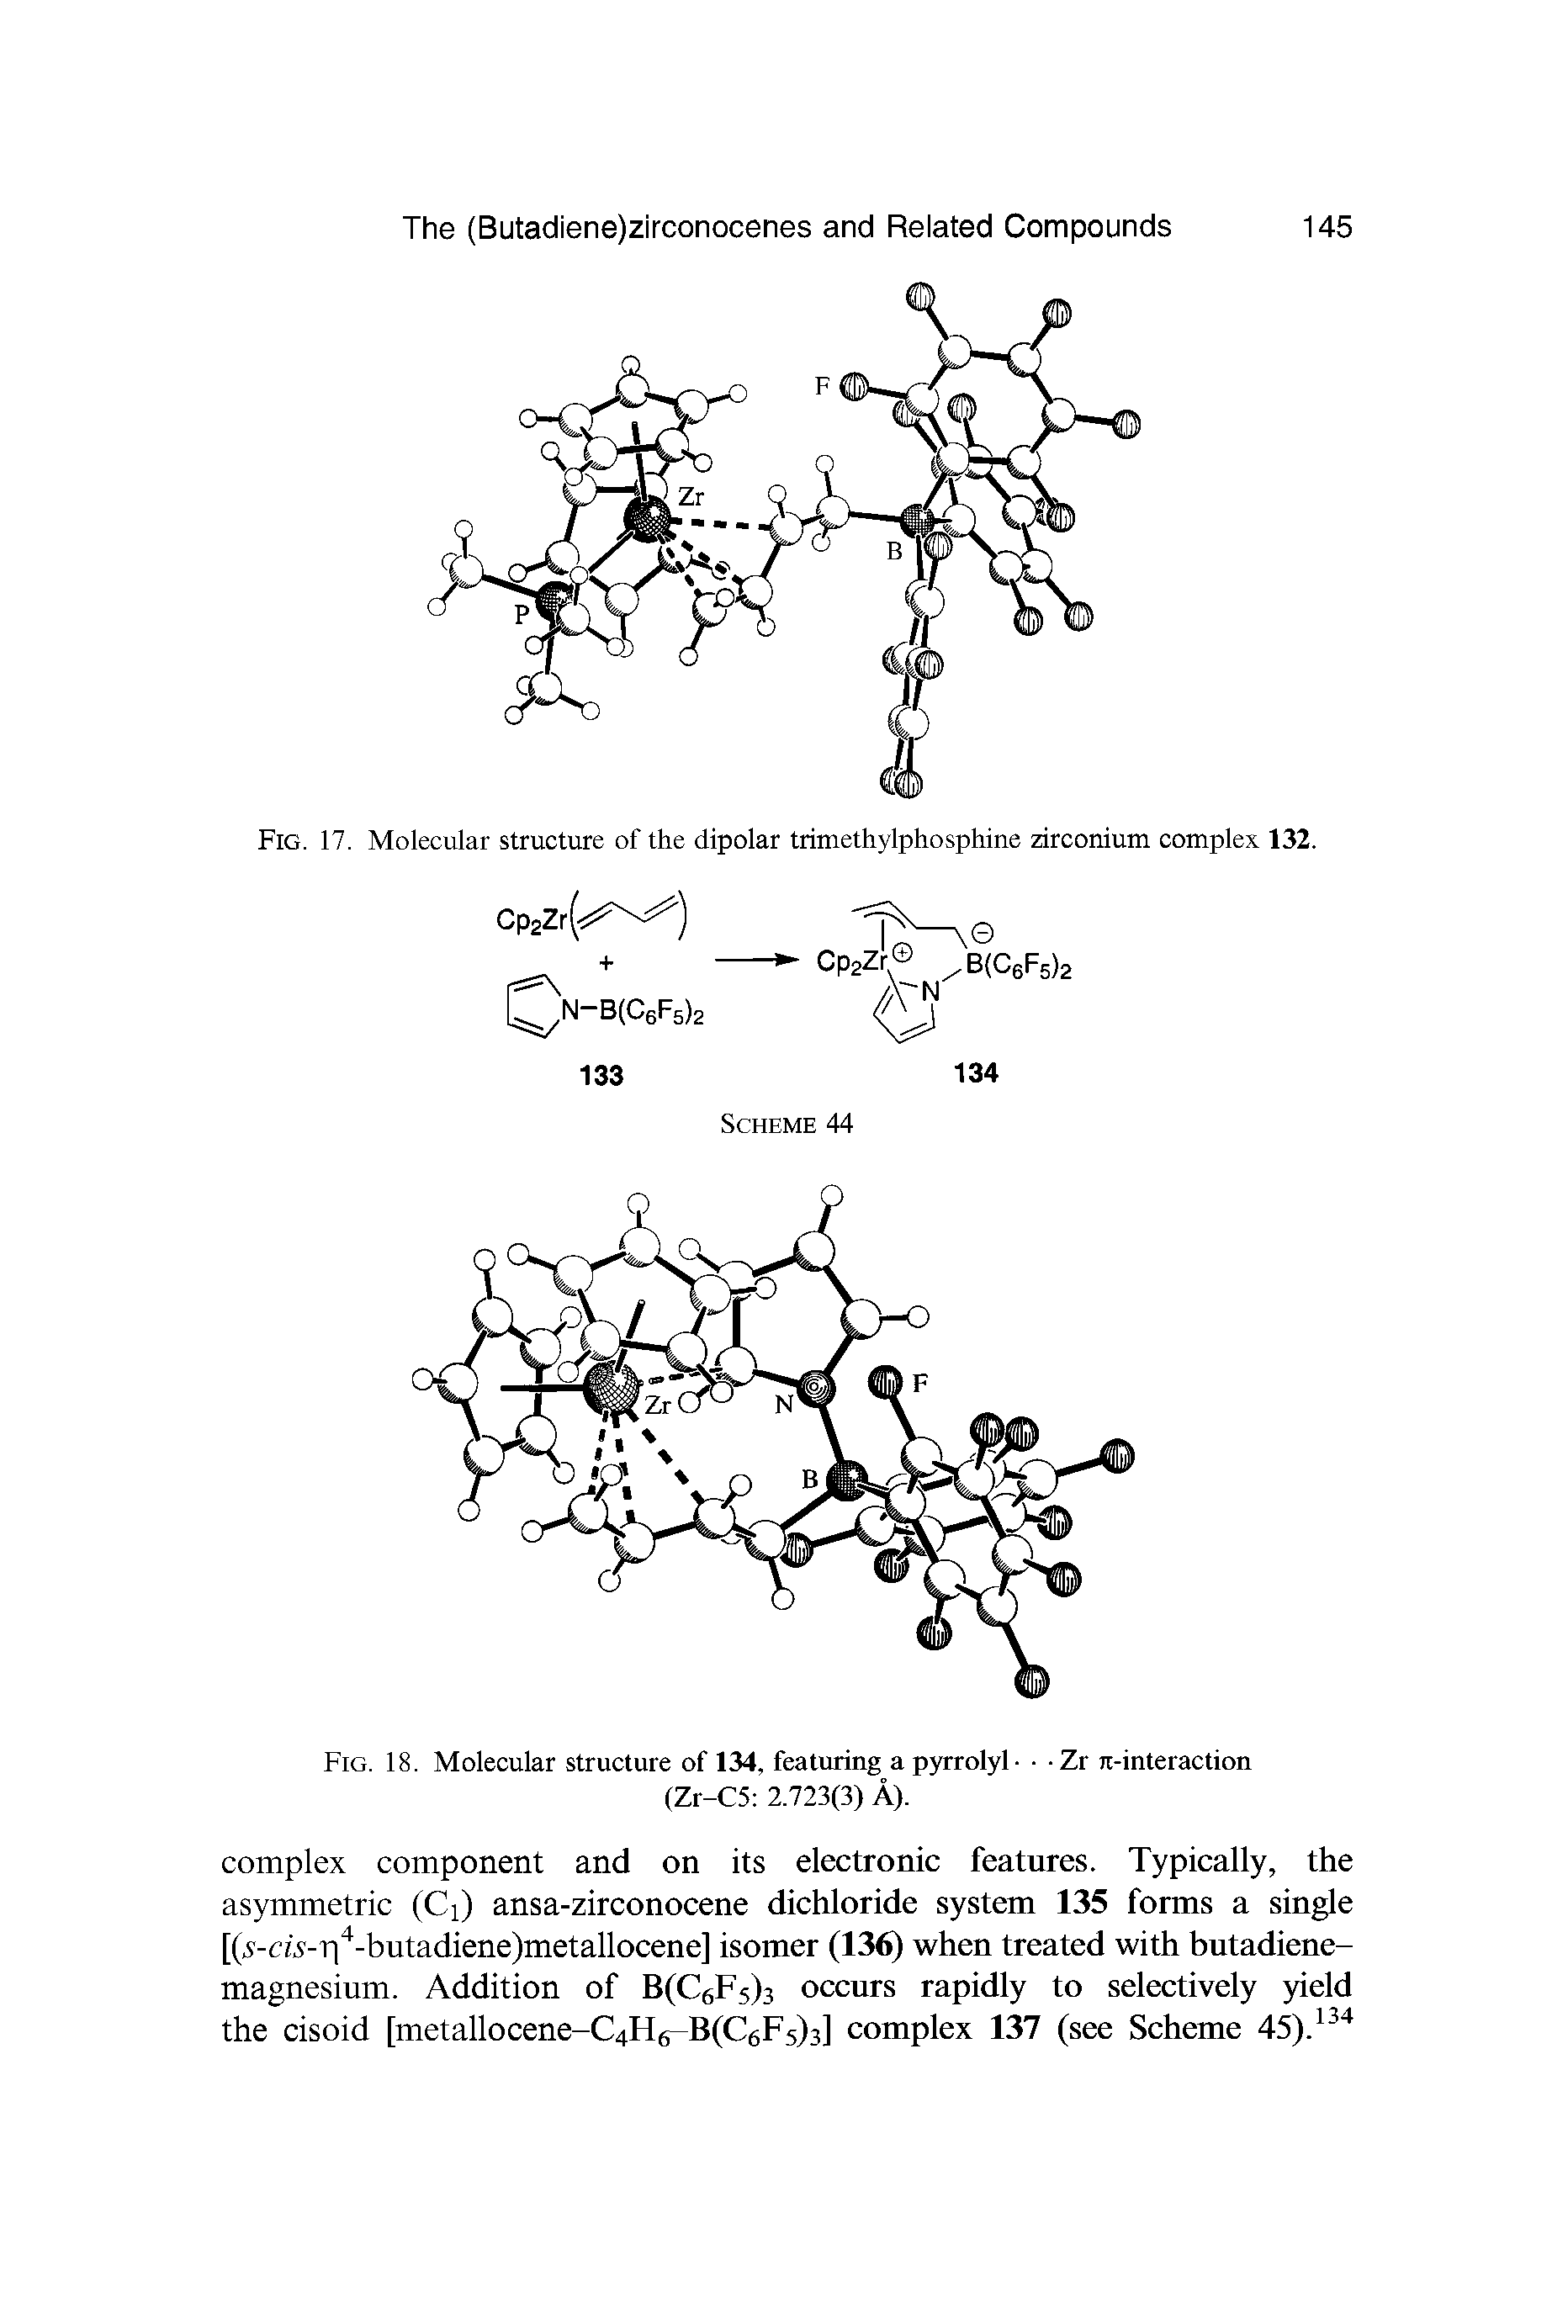 Fig. 17. Molecular structure of the dipolar trimethylphosphine zirconium complex 132.